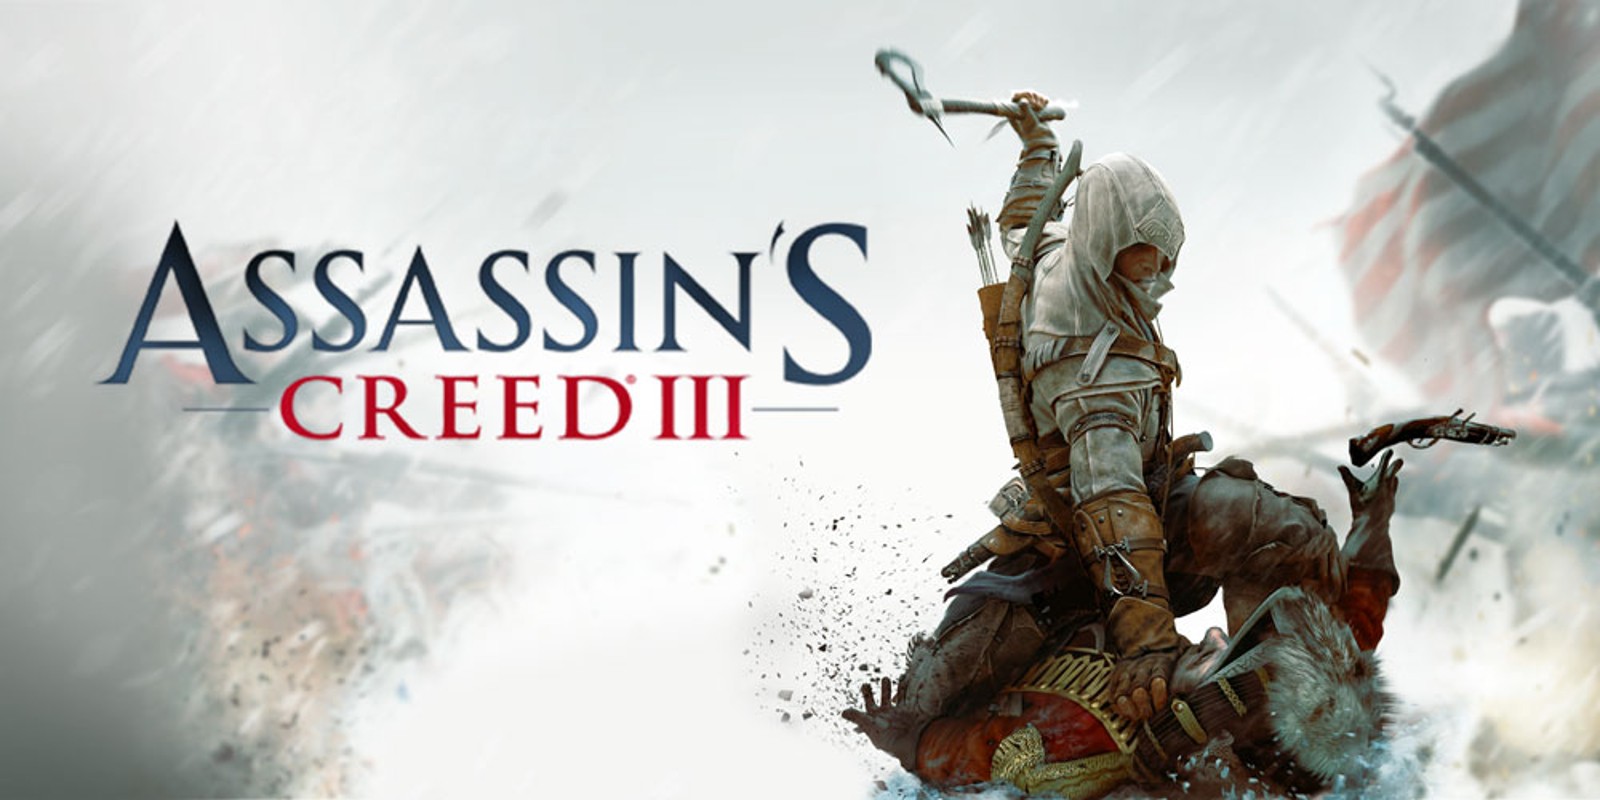 دانلود نسخه فشرده بازی Assassin’s Creed III با حجم 5.4 گیگابایت